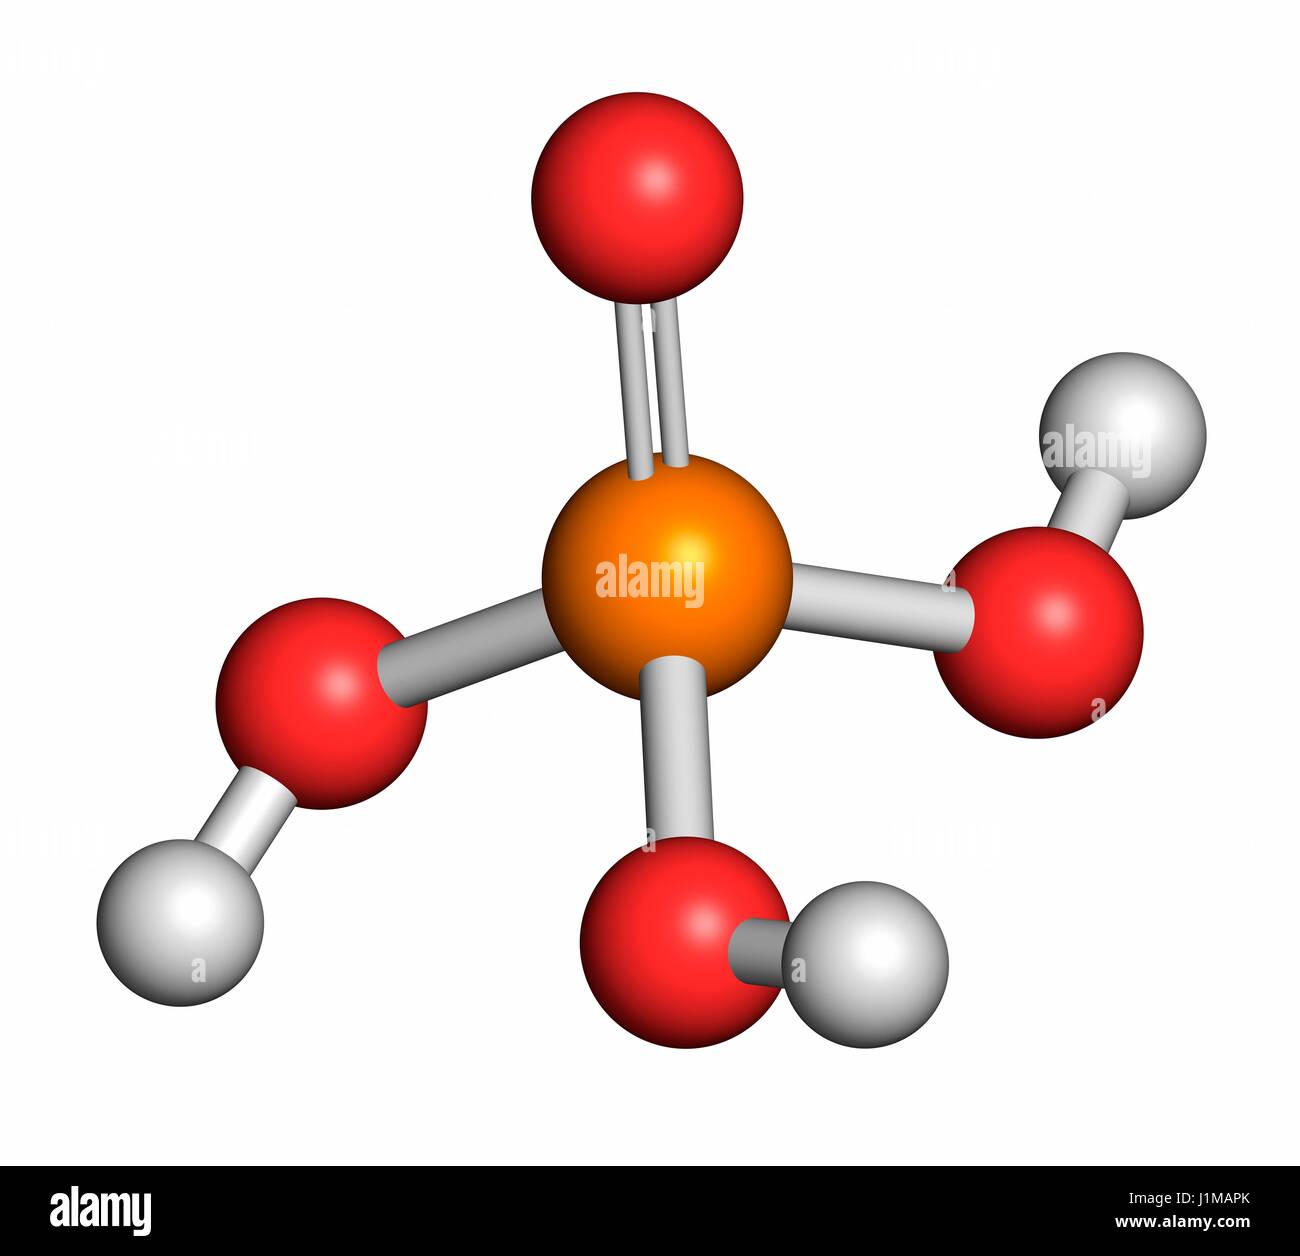 Acido fosforico acido minerale molecola. Utilizzato nella produzione di  fertilizzanti, tamponi biologici, come additivo alimentare, ecc. Gli atomi  sono rappresentati come sfere con i tradizionali colori: idrogeno (bianco),  Ossigeno (rosso), Fosforo